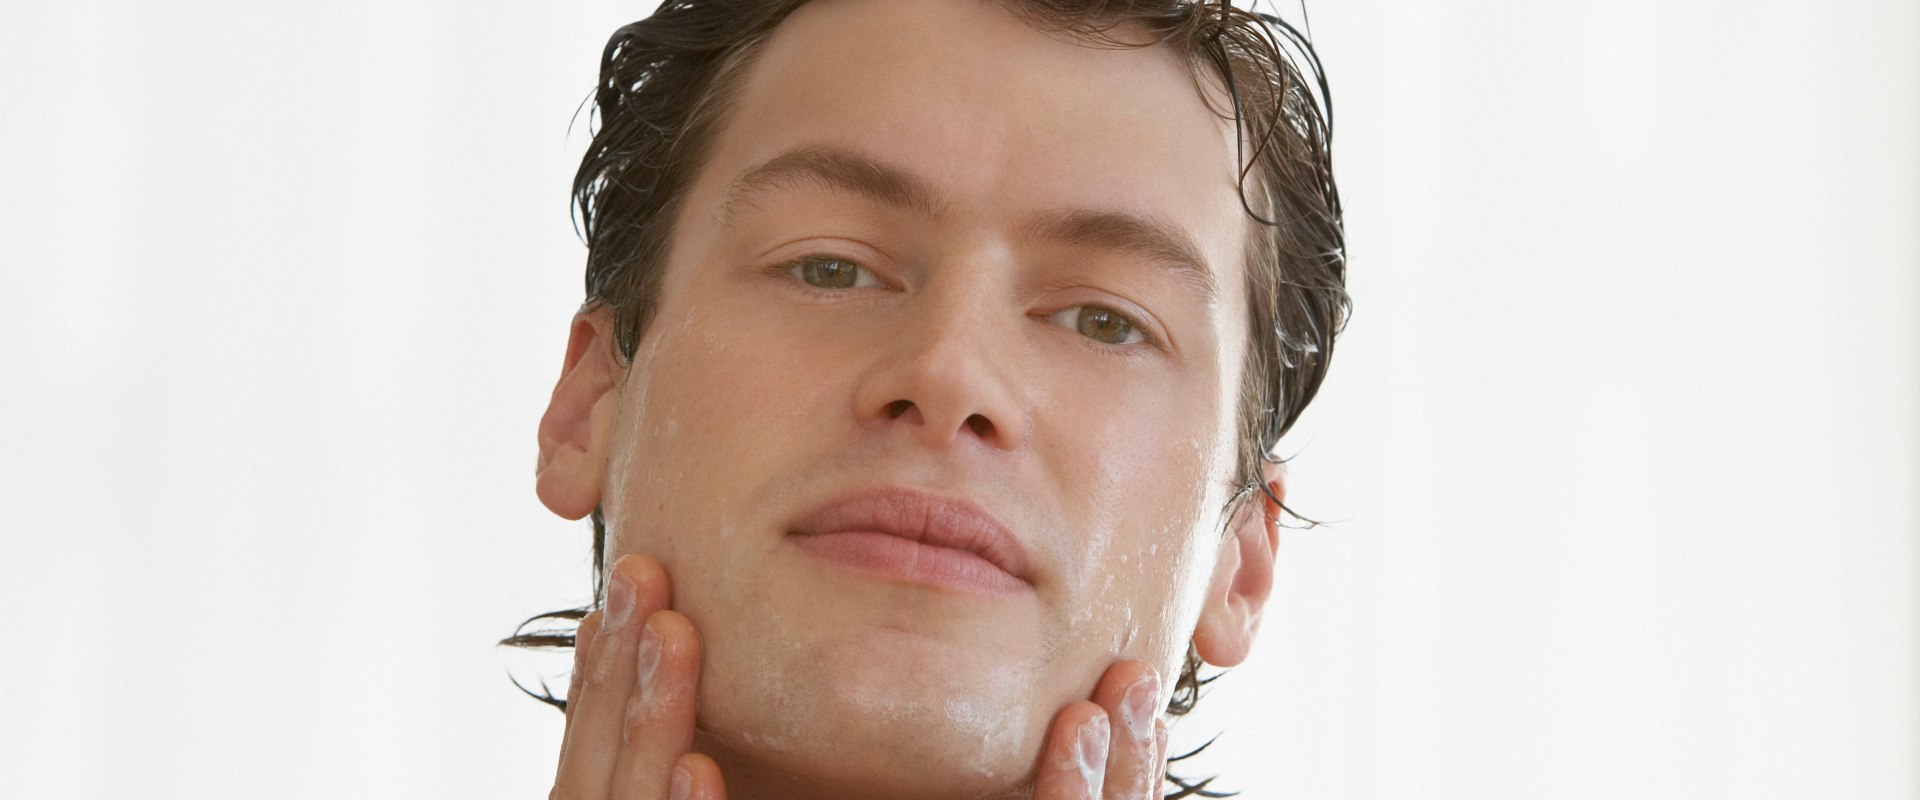 Come applicare correttamente i prodotti per il viso da uomo per ottenere i massimi risultati